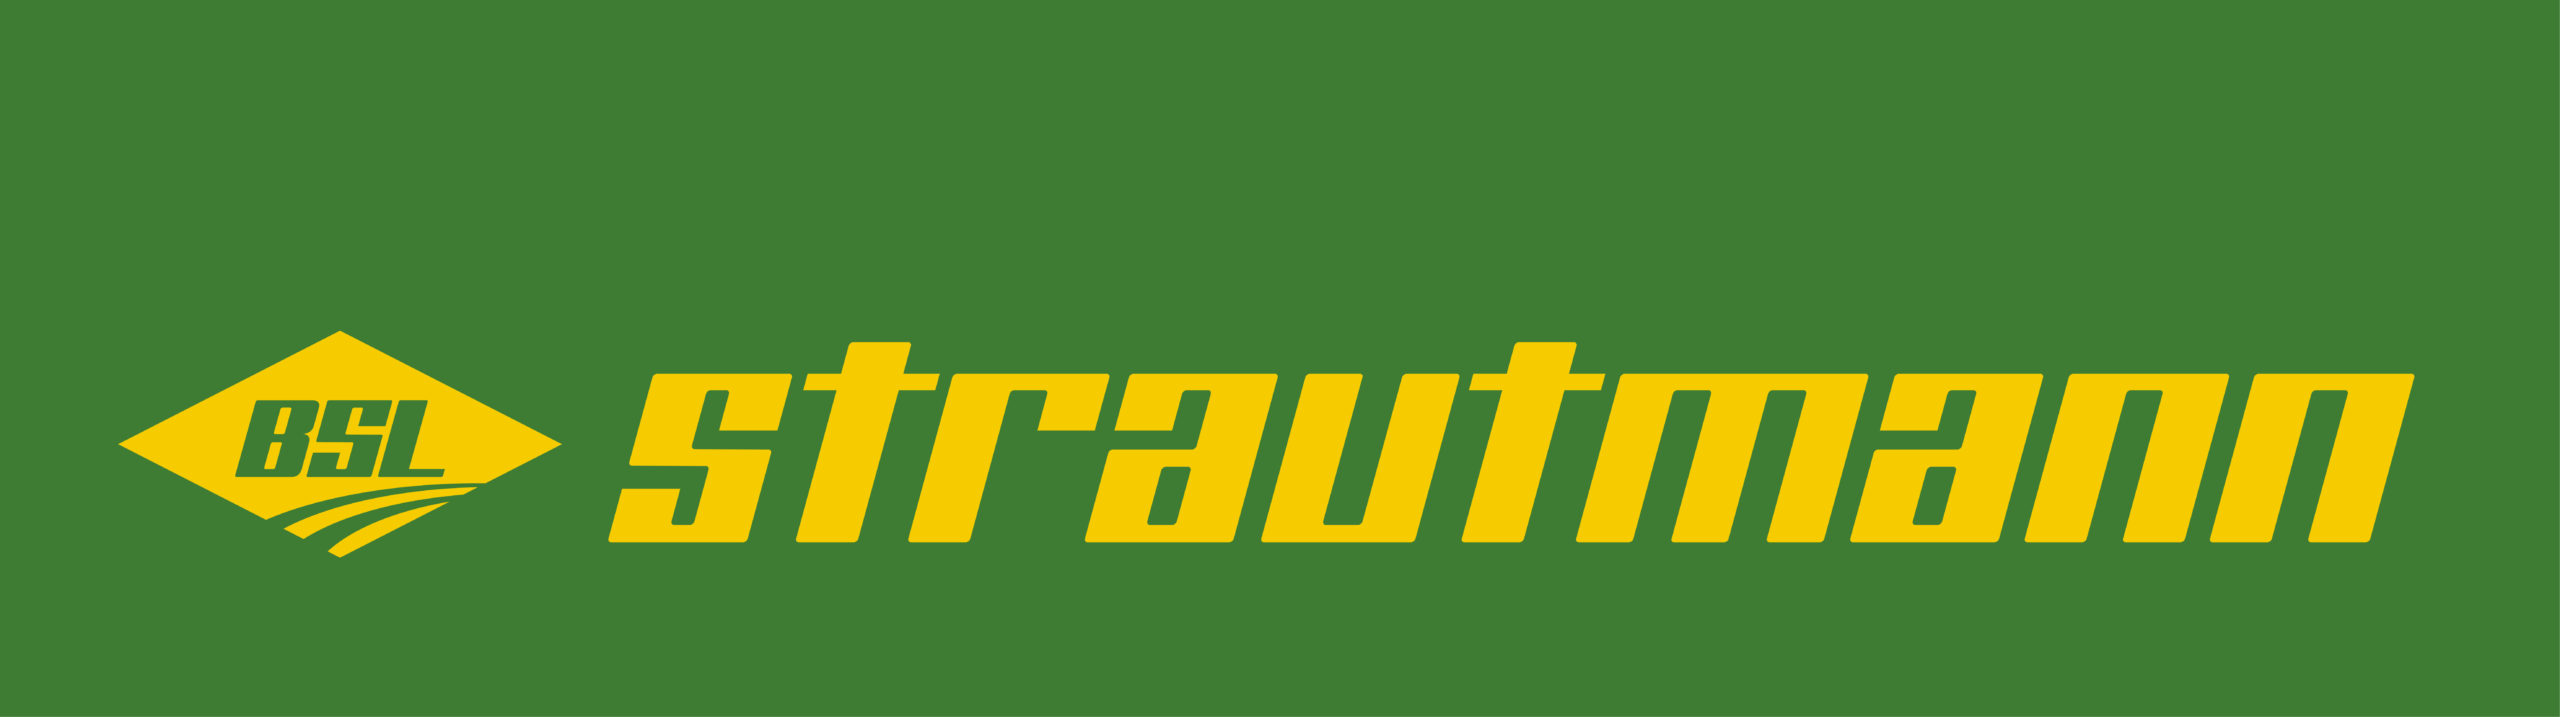 Strautmann - Logo Landtechnik